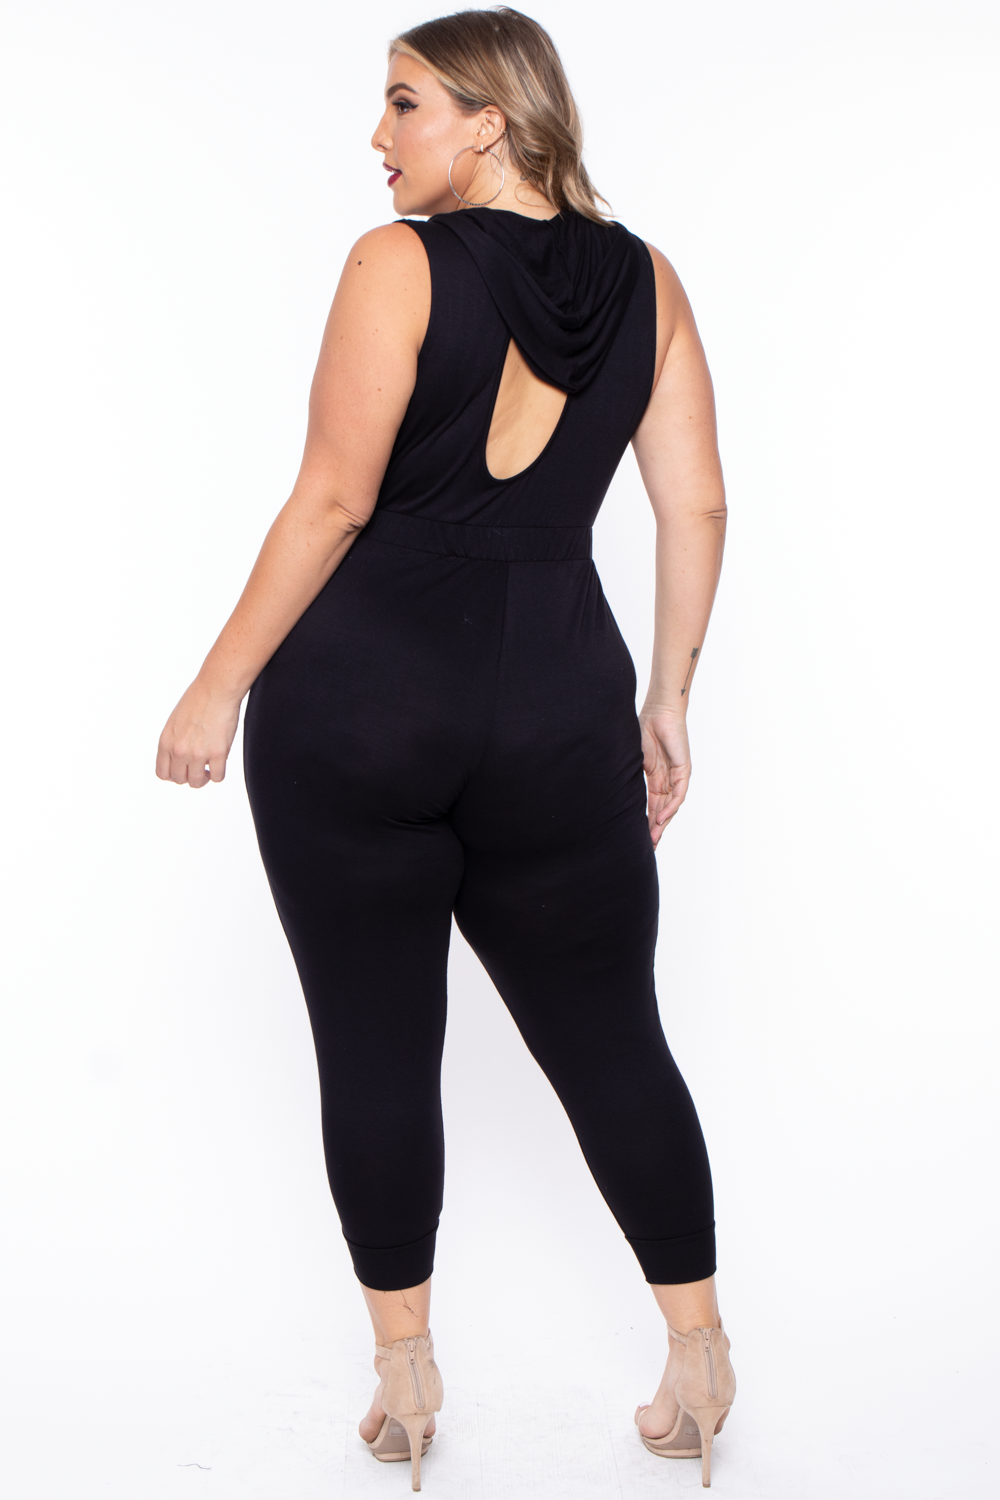 Plus Size Hooded Zip Front Jumpsuit - Black - Curvy Sense